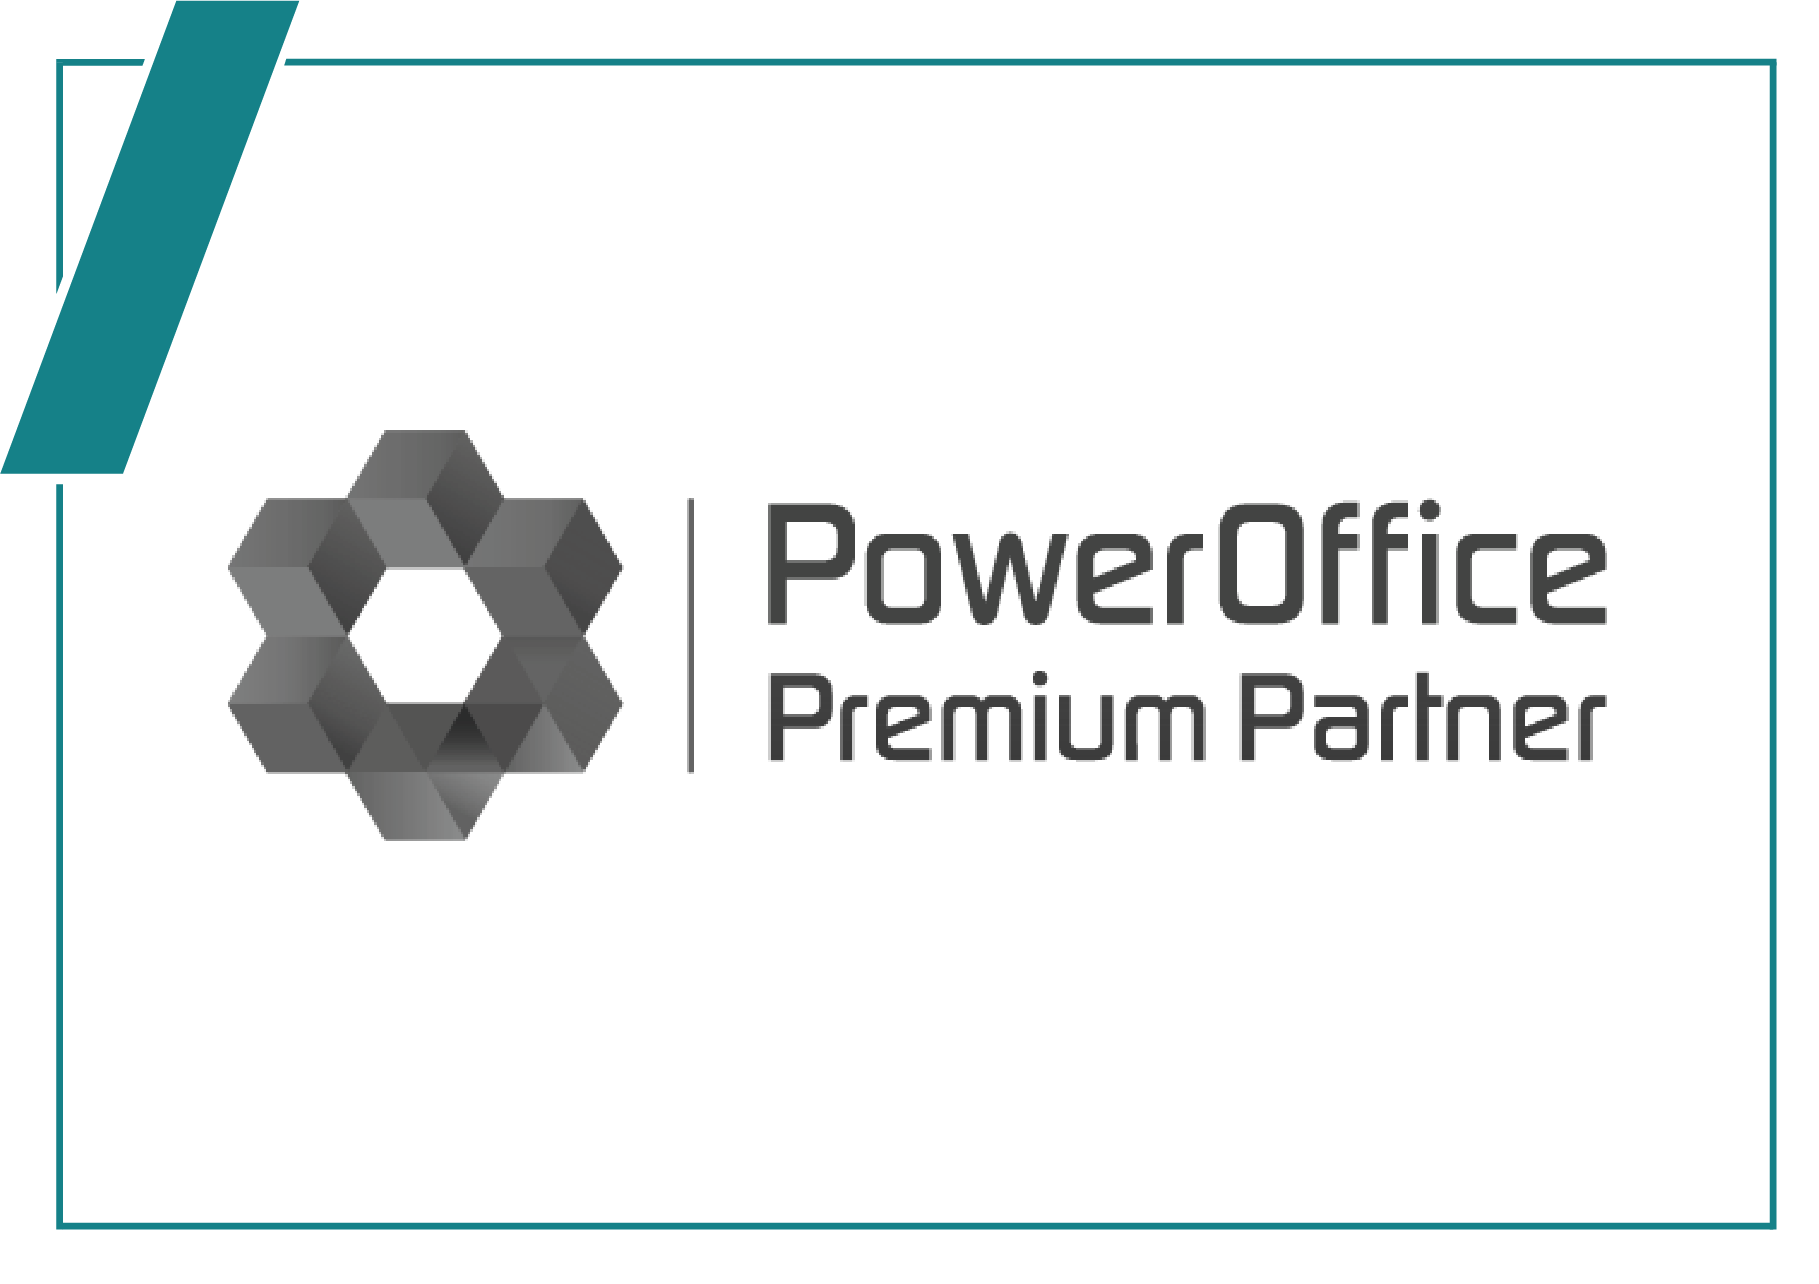 PowerOffice Go regnskapsprogram premium partner logo grå